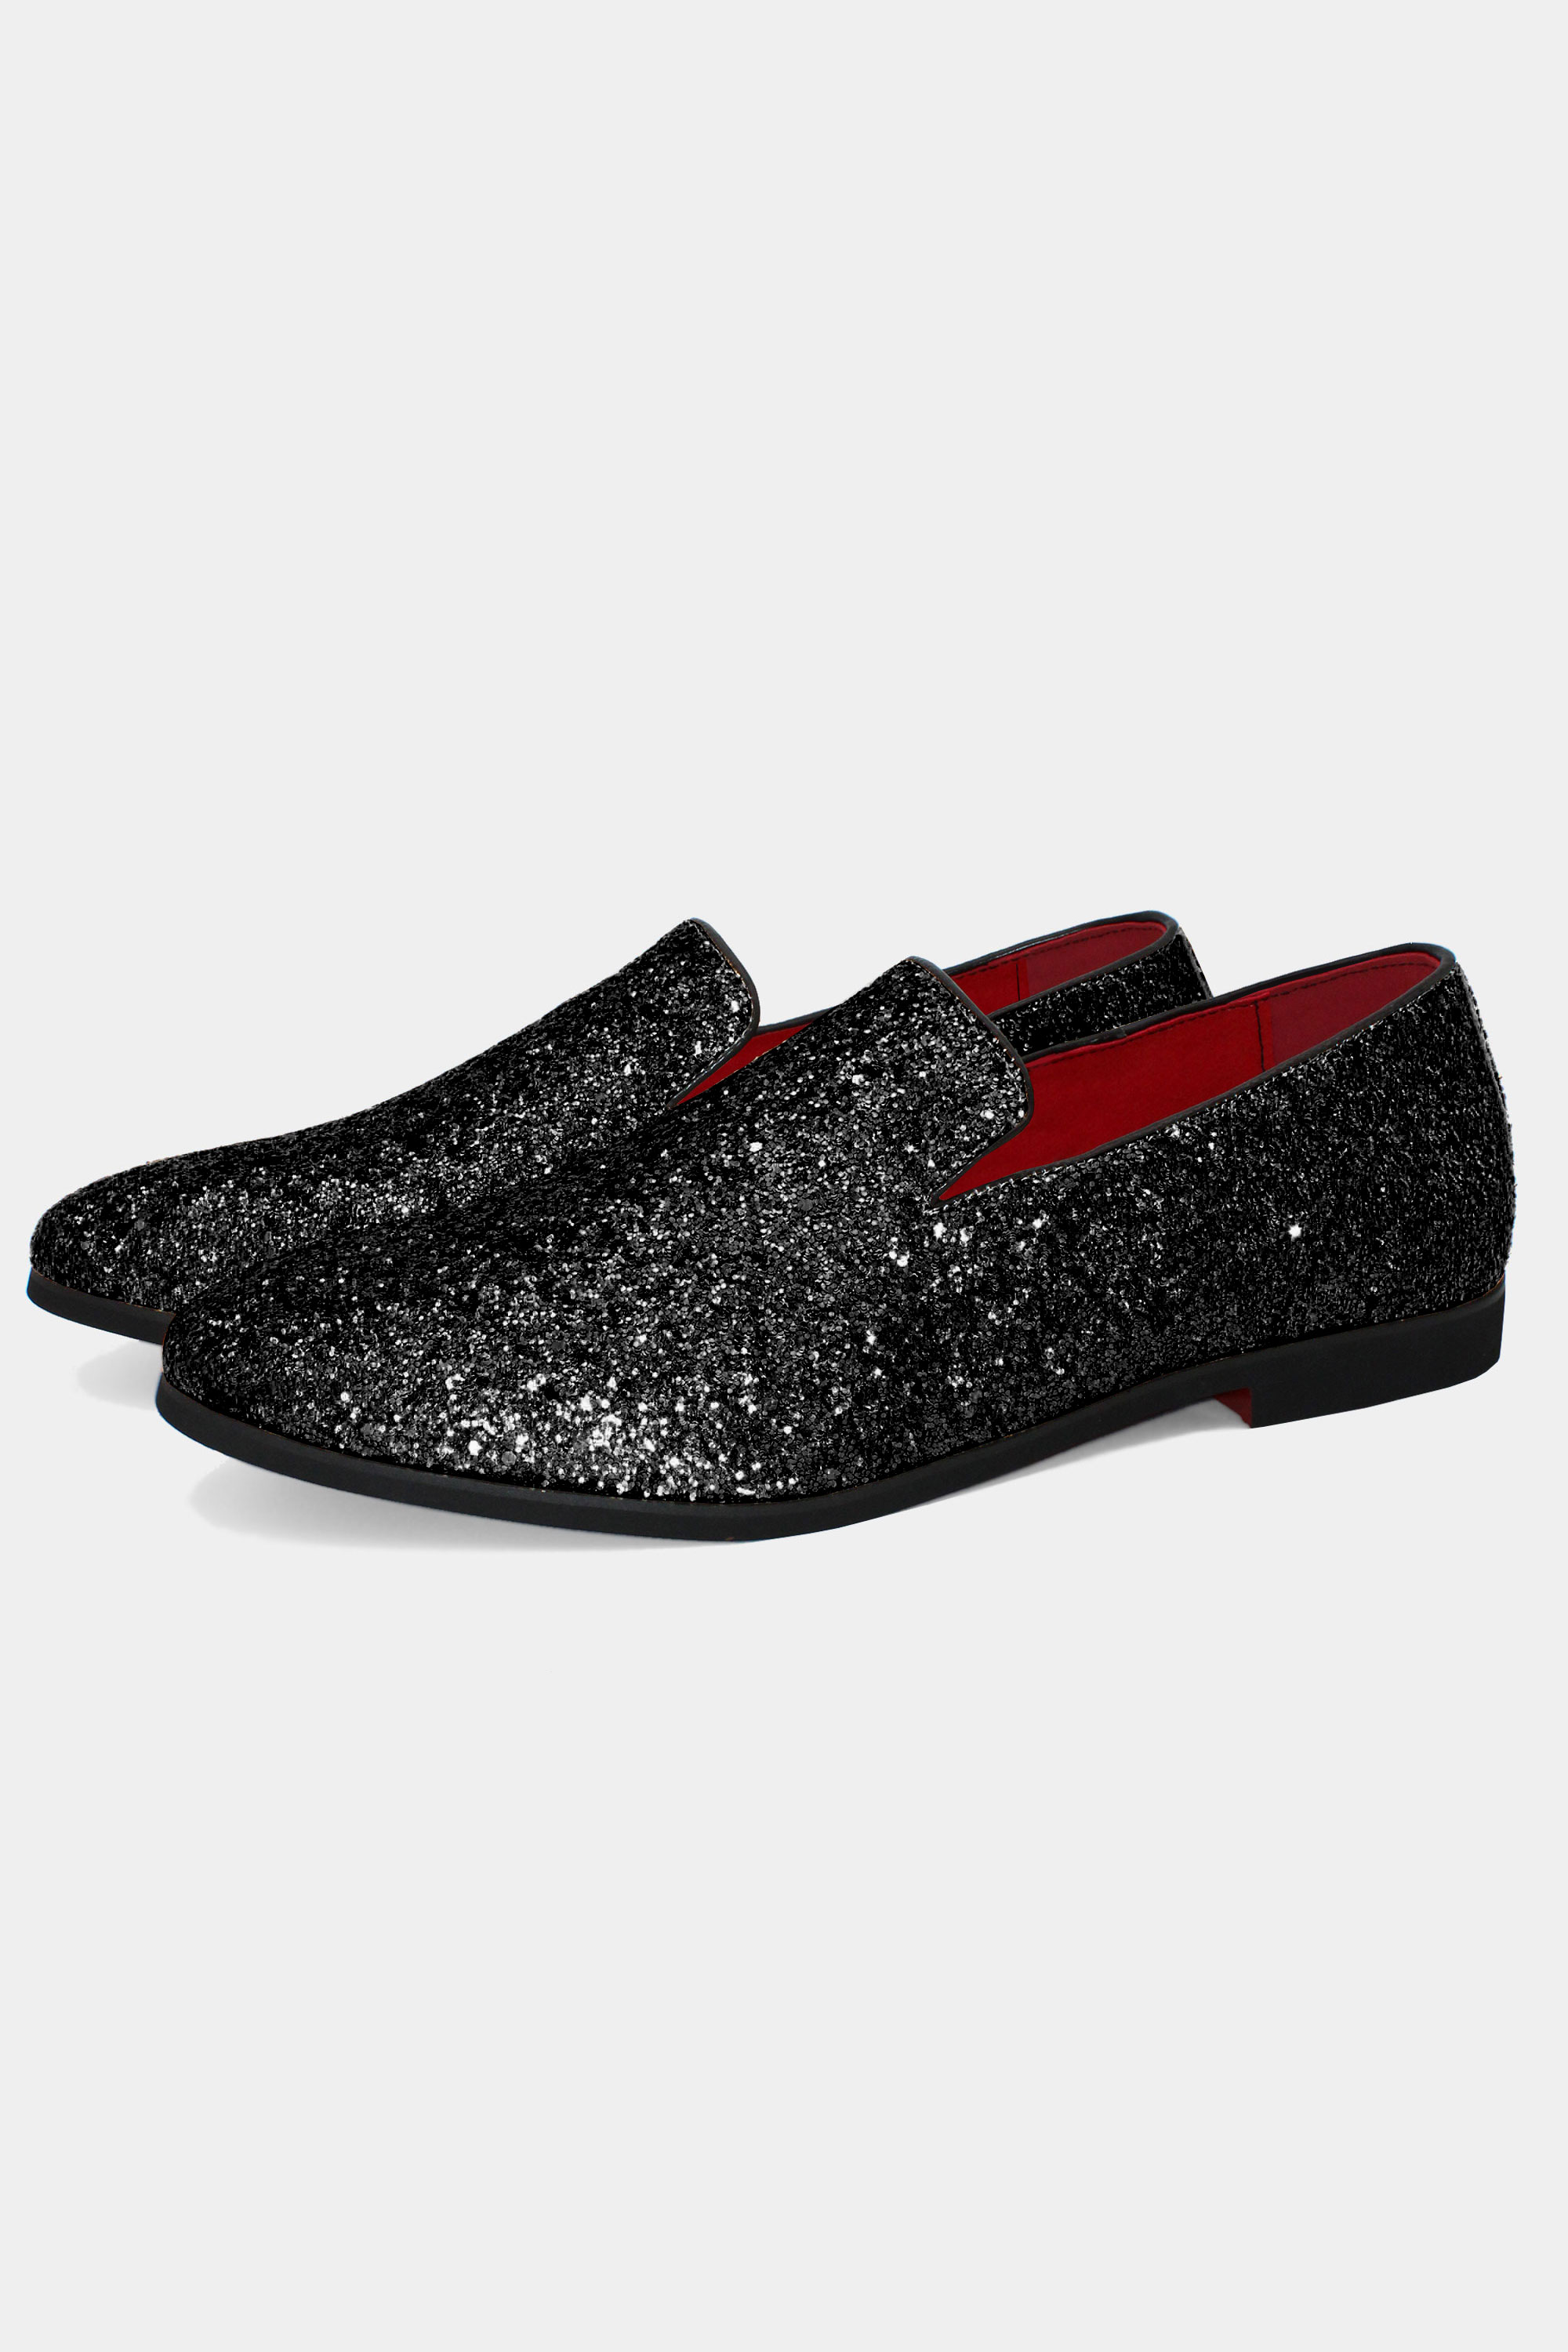 GENTLERSHOP Mens Crystal Glitter Encrusted Loafers Slip Ons Handmade 5271 